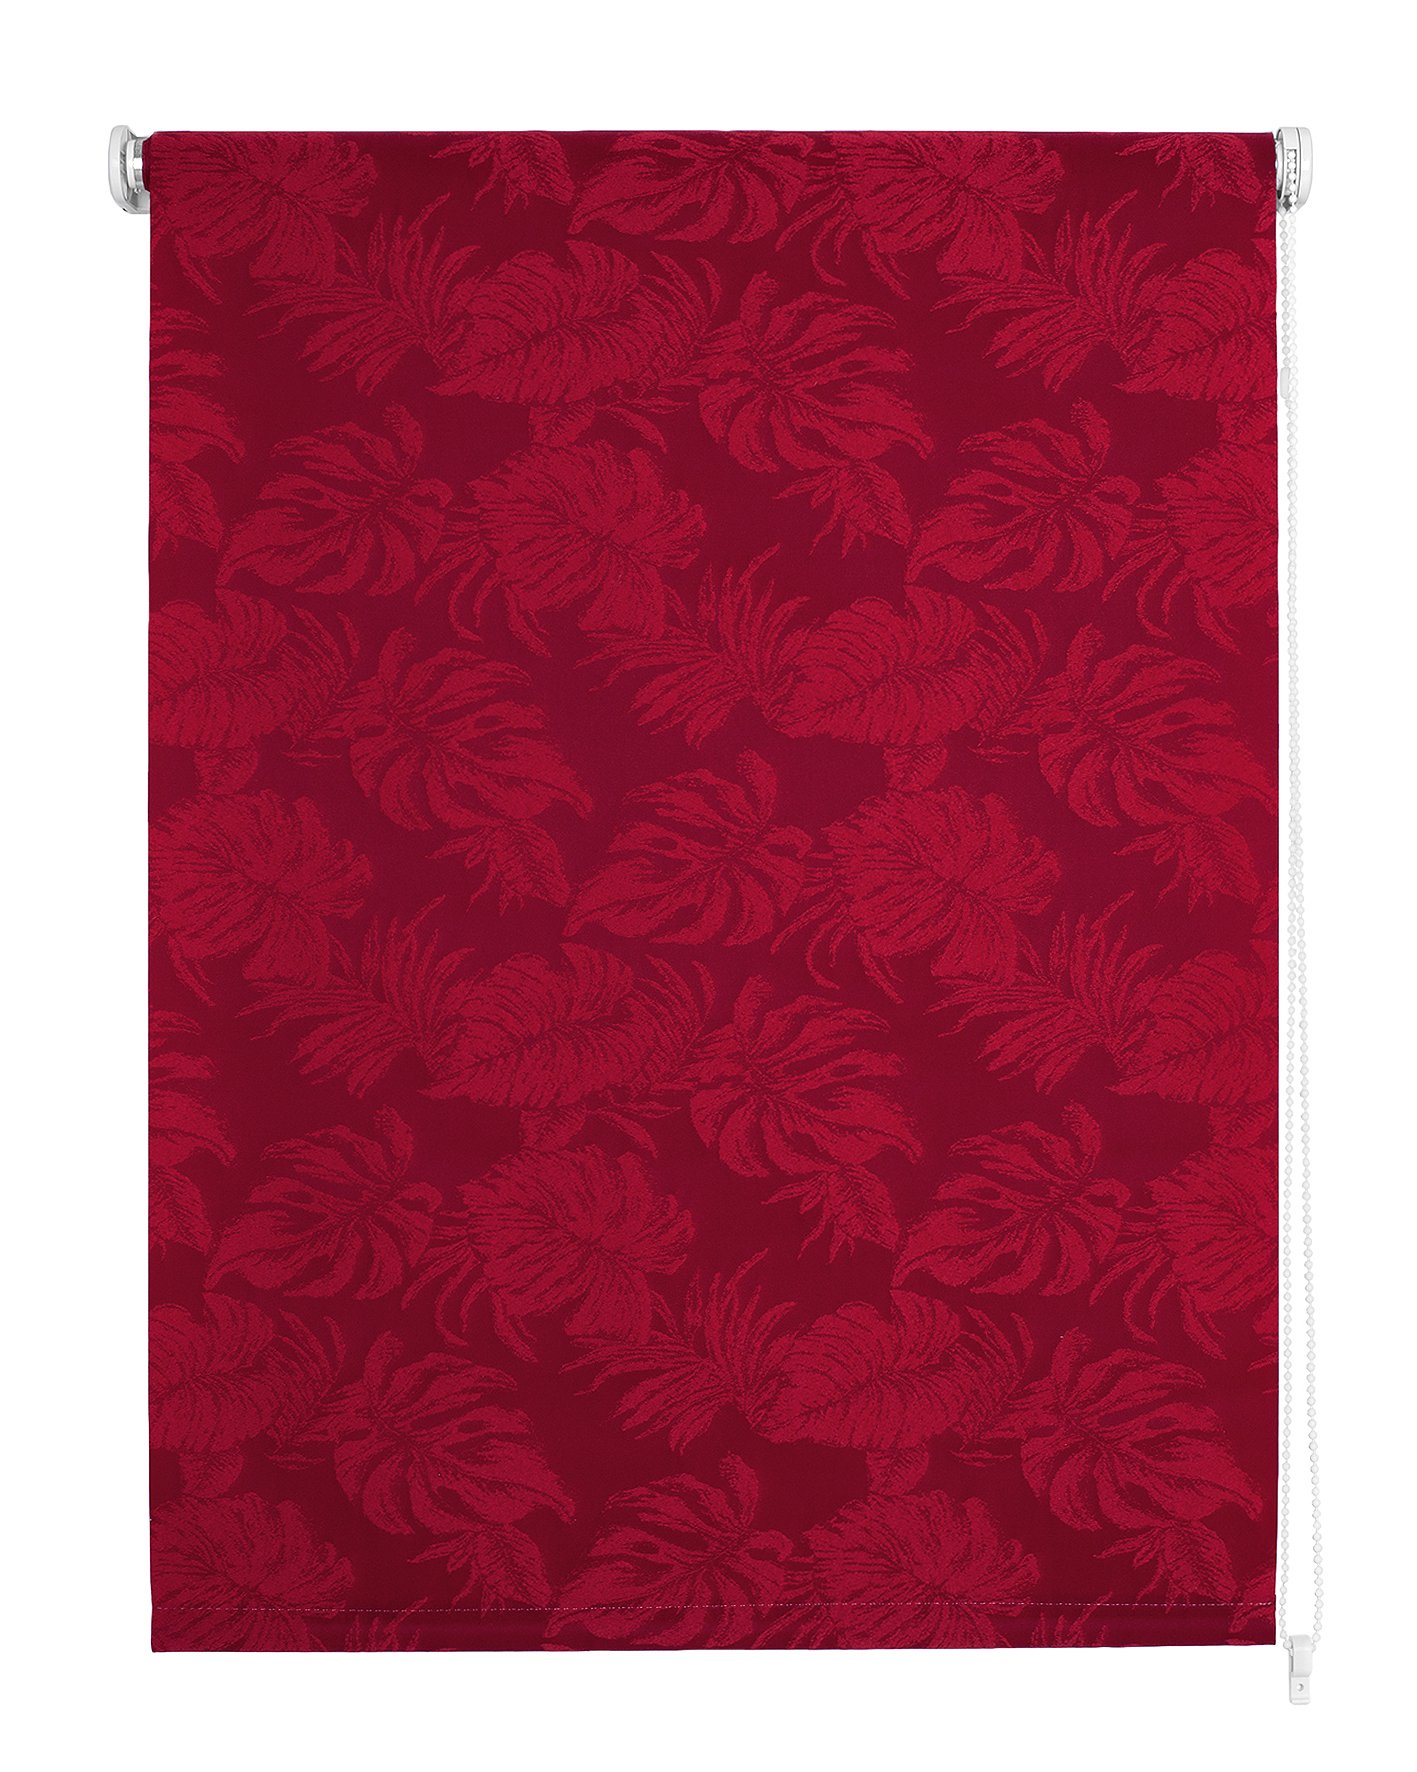 Klasikinė ritininė užuolaida OSLO, raudonos sp.,160 x 170 cm, 100 % poliesteris - 1